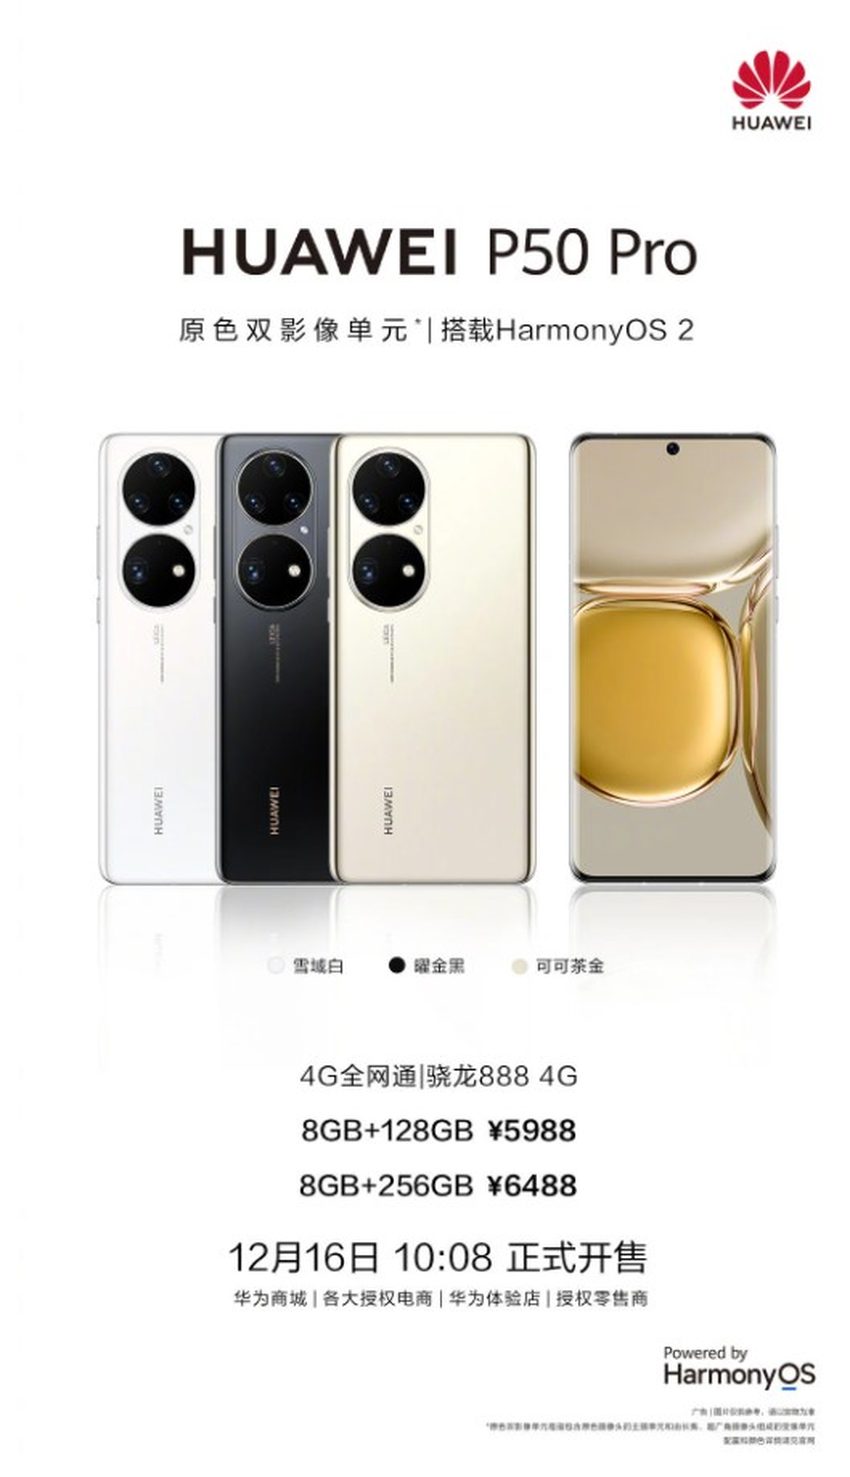 Huawei P50 Pro 4G: Özellikleri, fiyatı ve çıkış tarihi